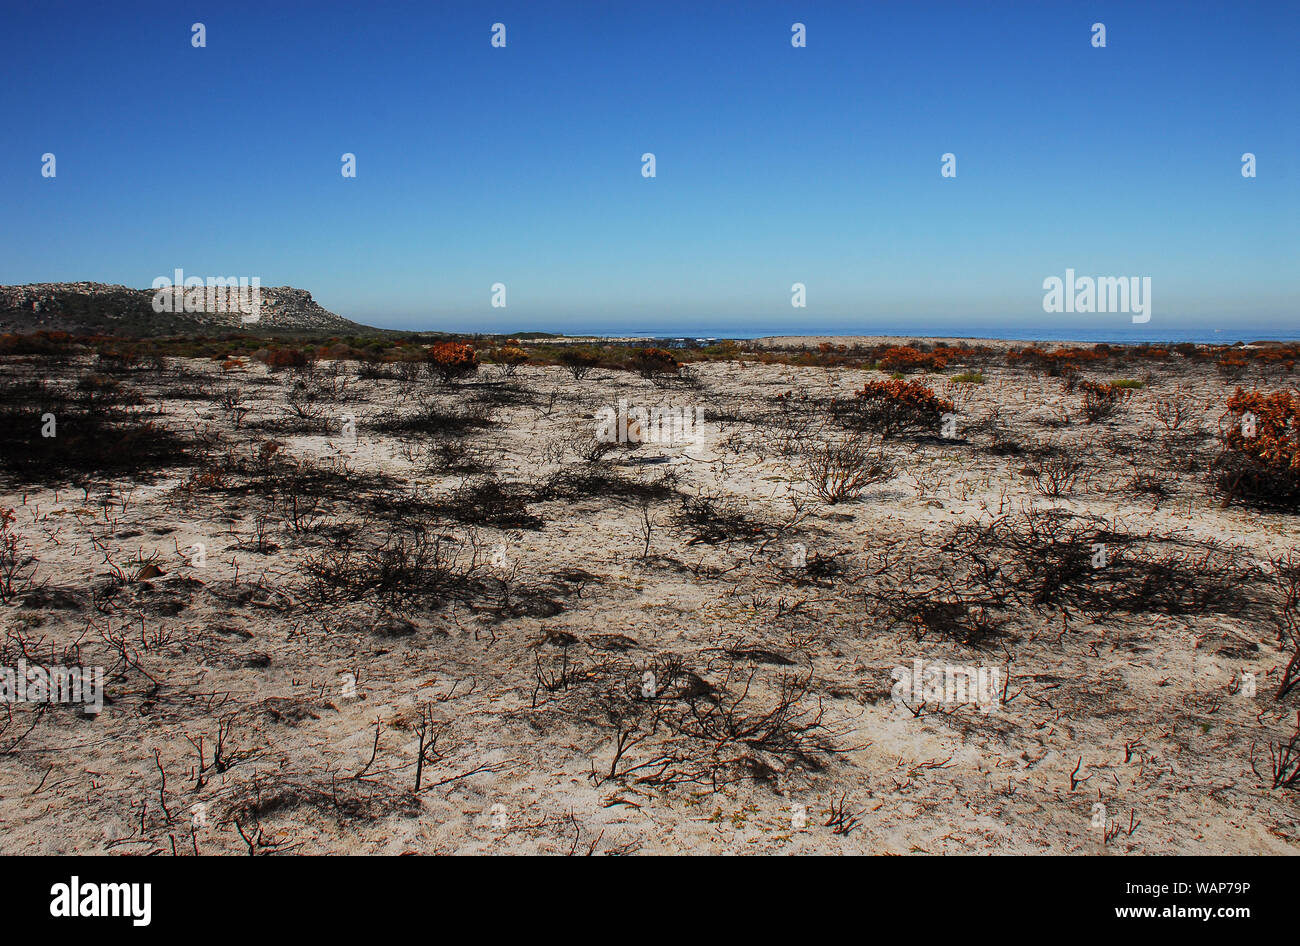 Die Brände in der Nähe von Kapstadt in diesem Jahr hinterliess eine surreale Landschaft von schwärzen Anlage Skelette. Eine Erinnerung an die Gefahren des Klimawandels Dürre. Stockfoto